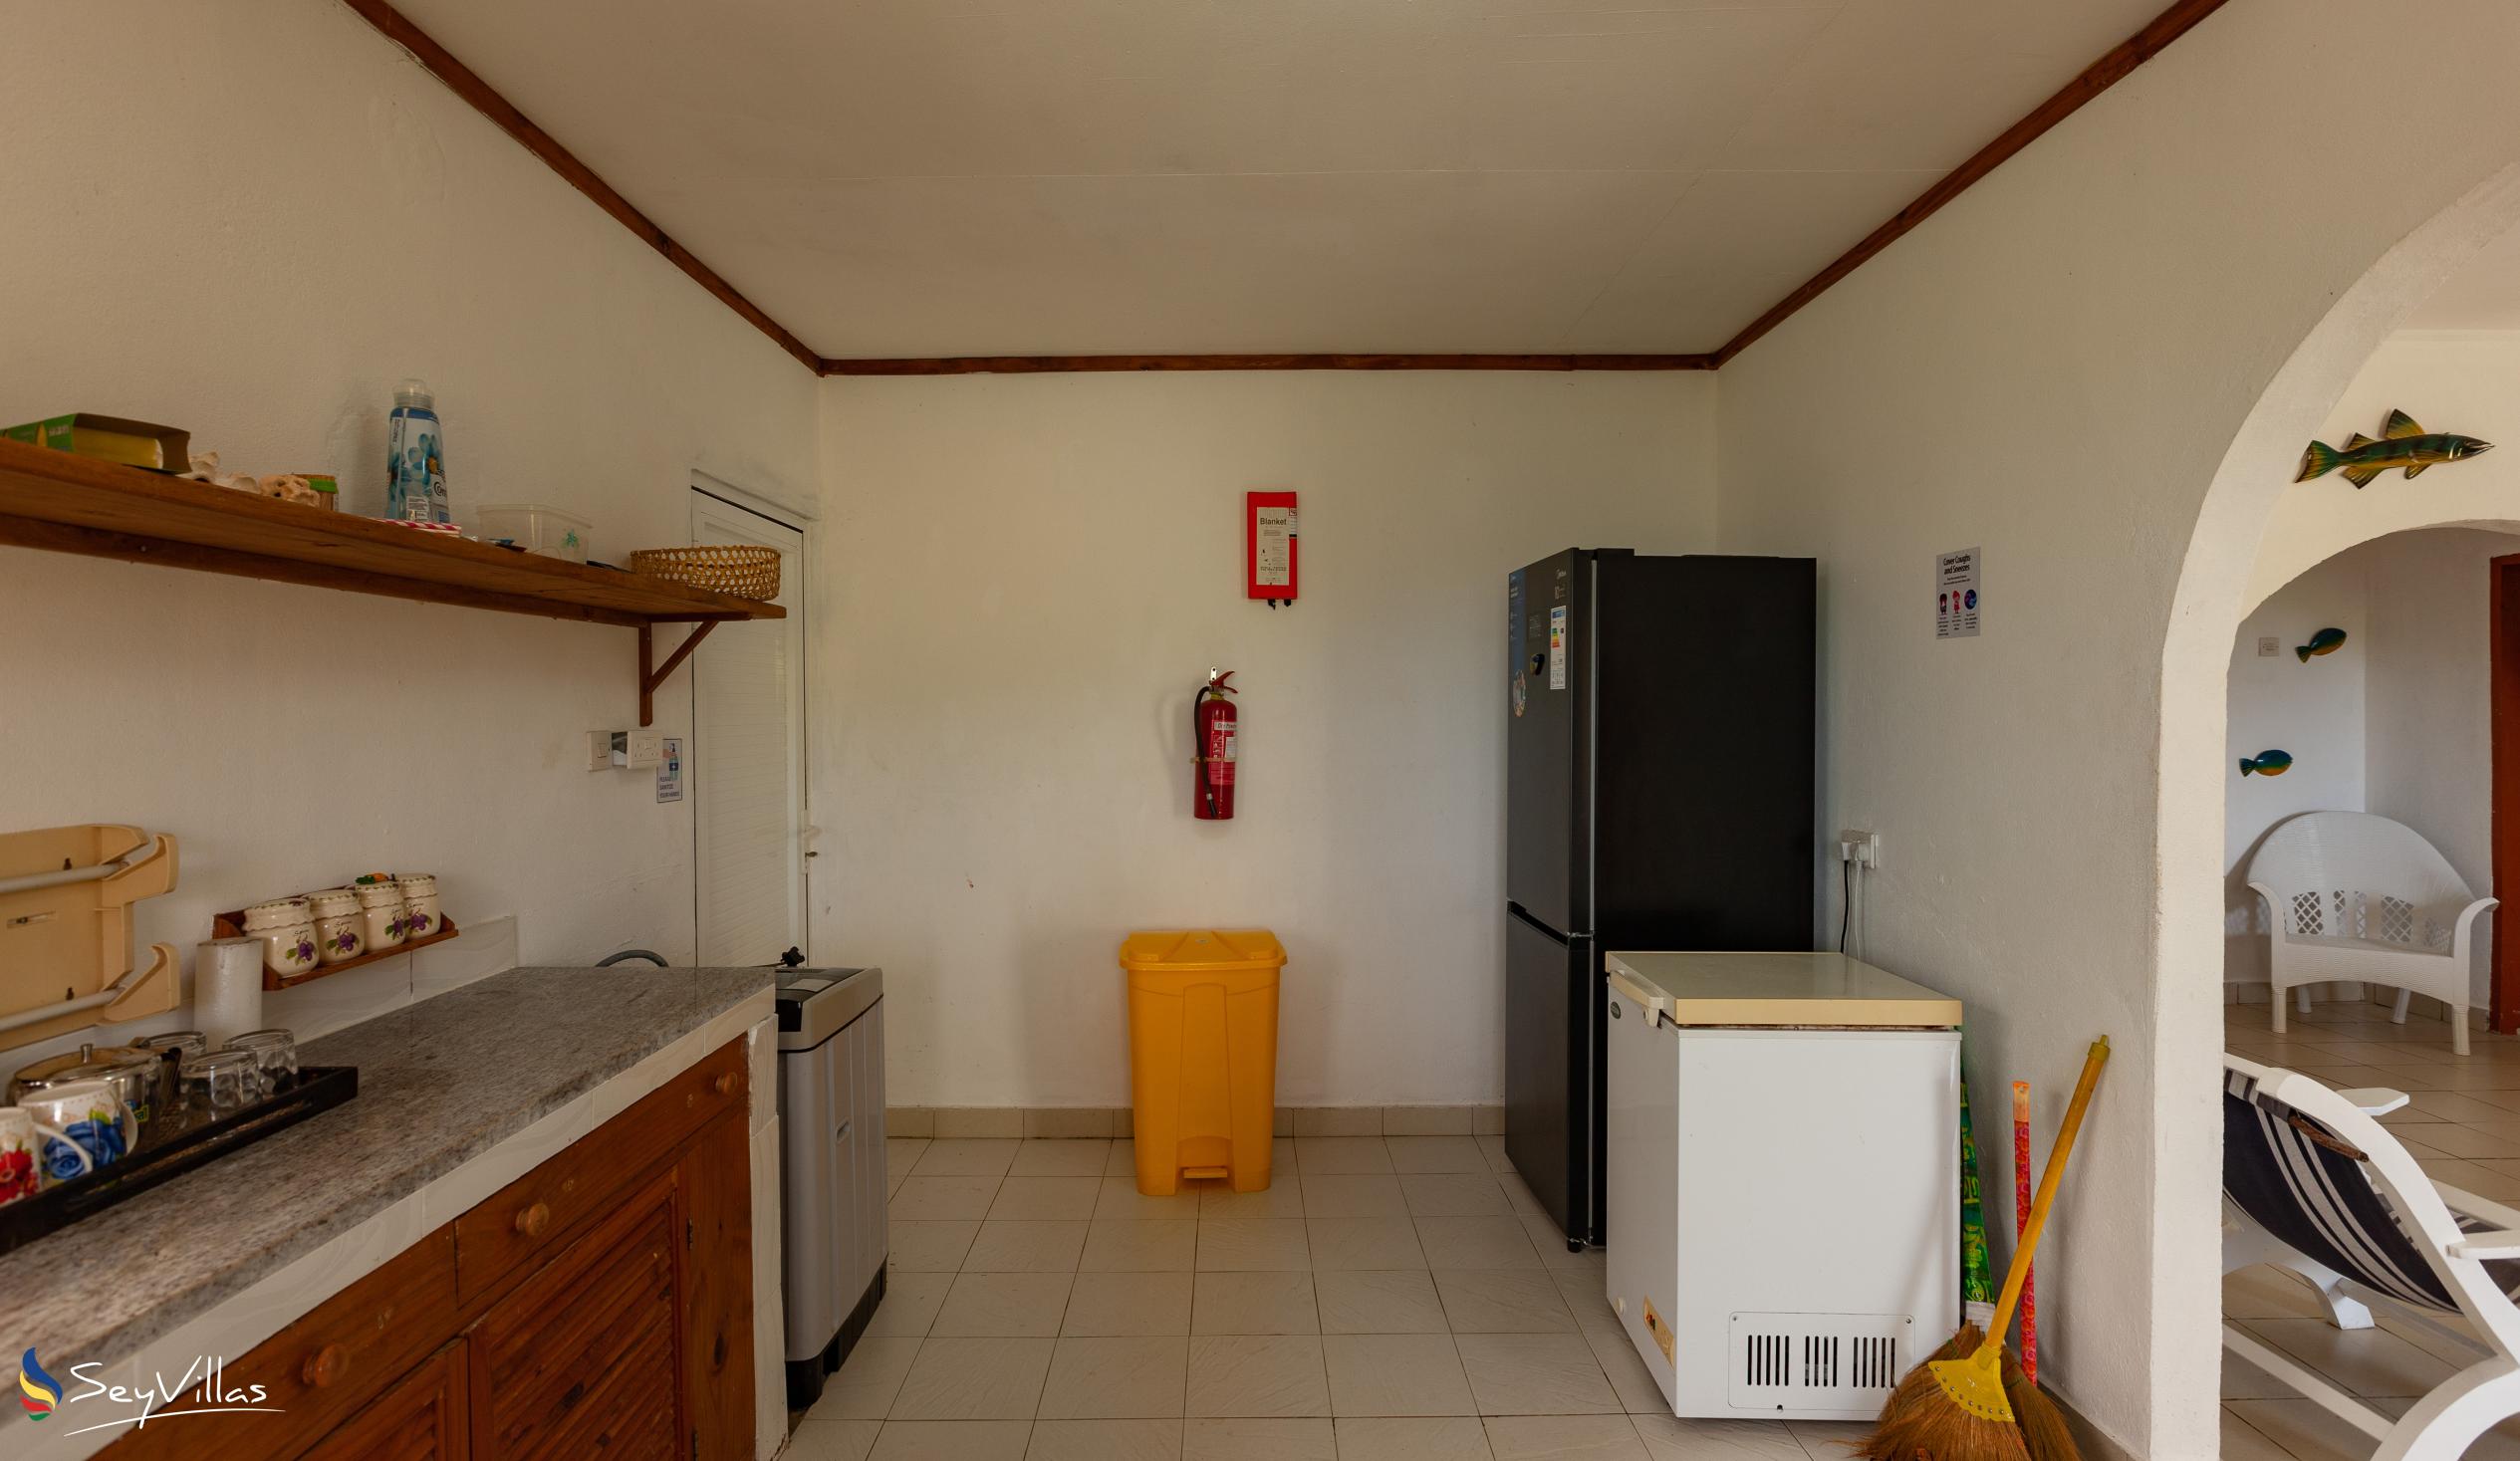 Foto 36: Maison du Soleil - Innenbereich - Praslin (Seychellen)